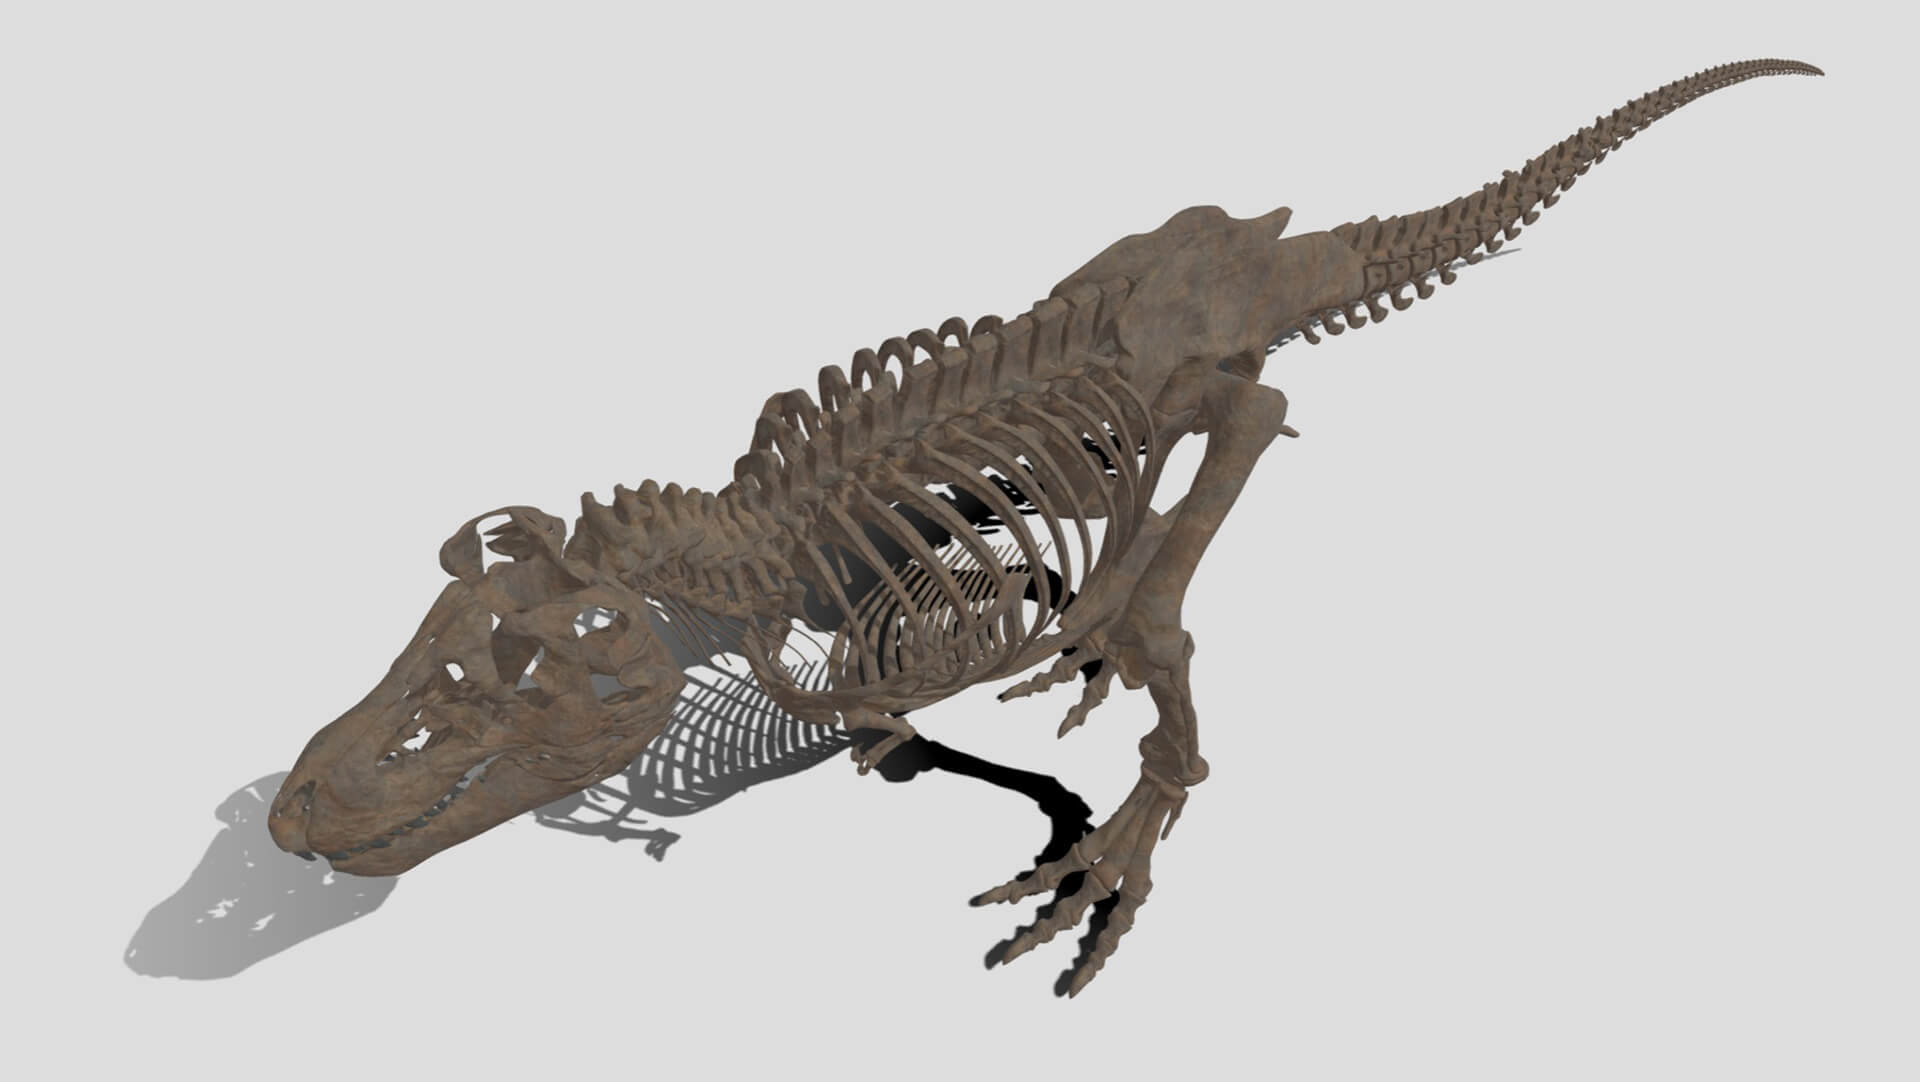 ディノ・ネット　デジタル恐竜展示室